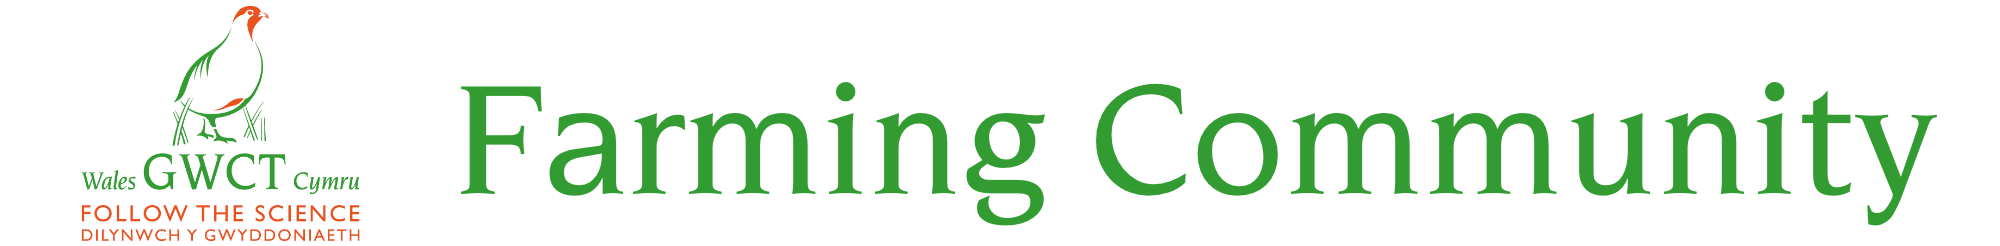 Logo for GWCT Wales Farming Community